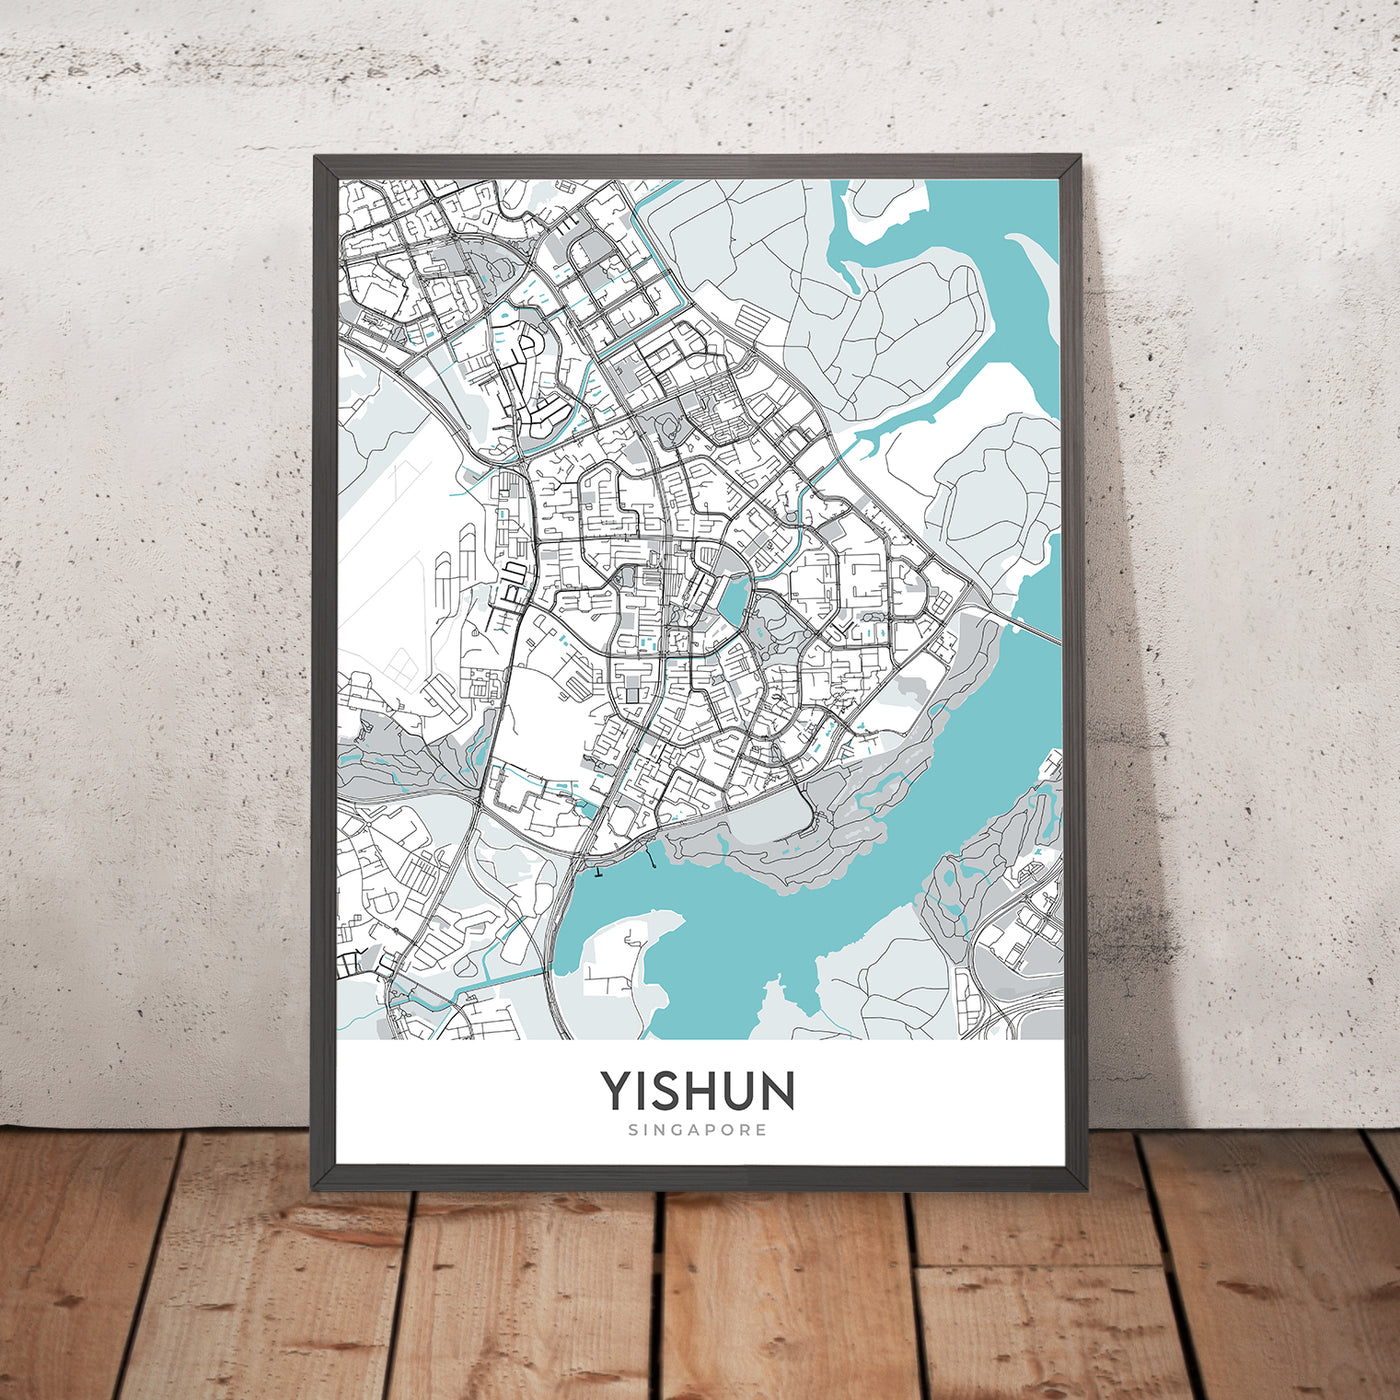 Plan de la ville moderne de Yishun, Singapour : hôpital Khoo Teck Puat, ville de Northpoint, réservoir Lower Seletar, parc Yishun, club SAFRA